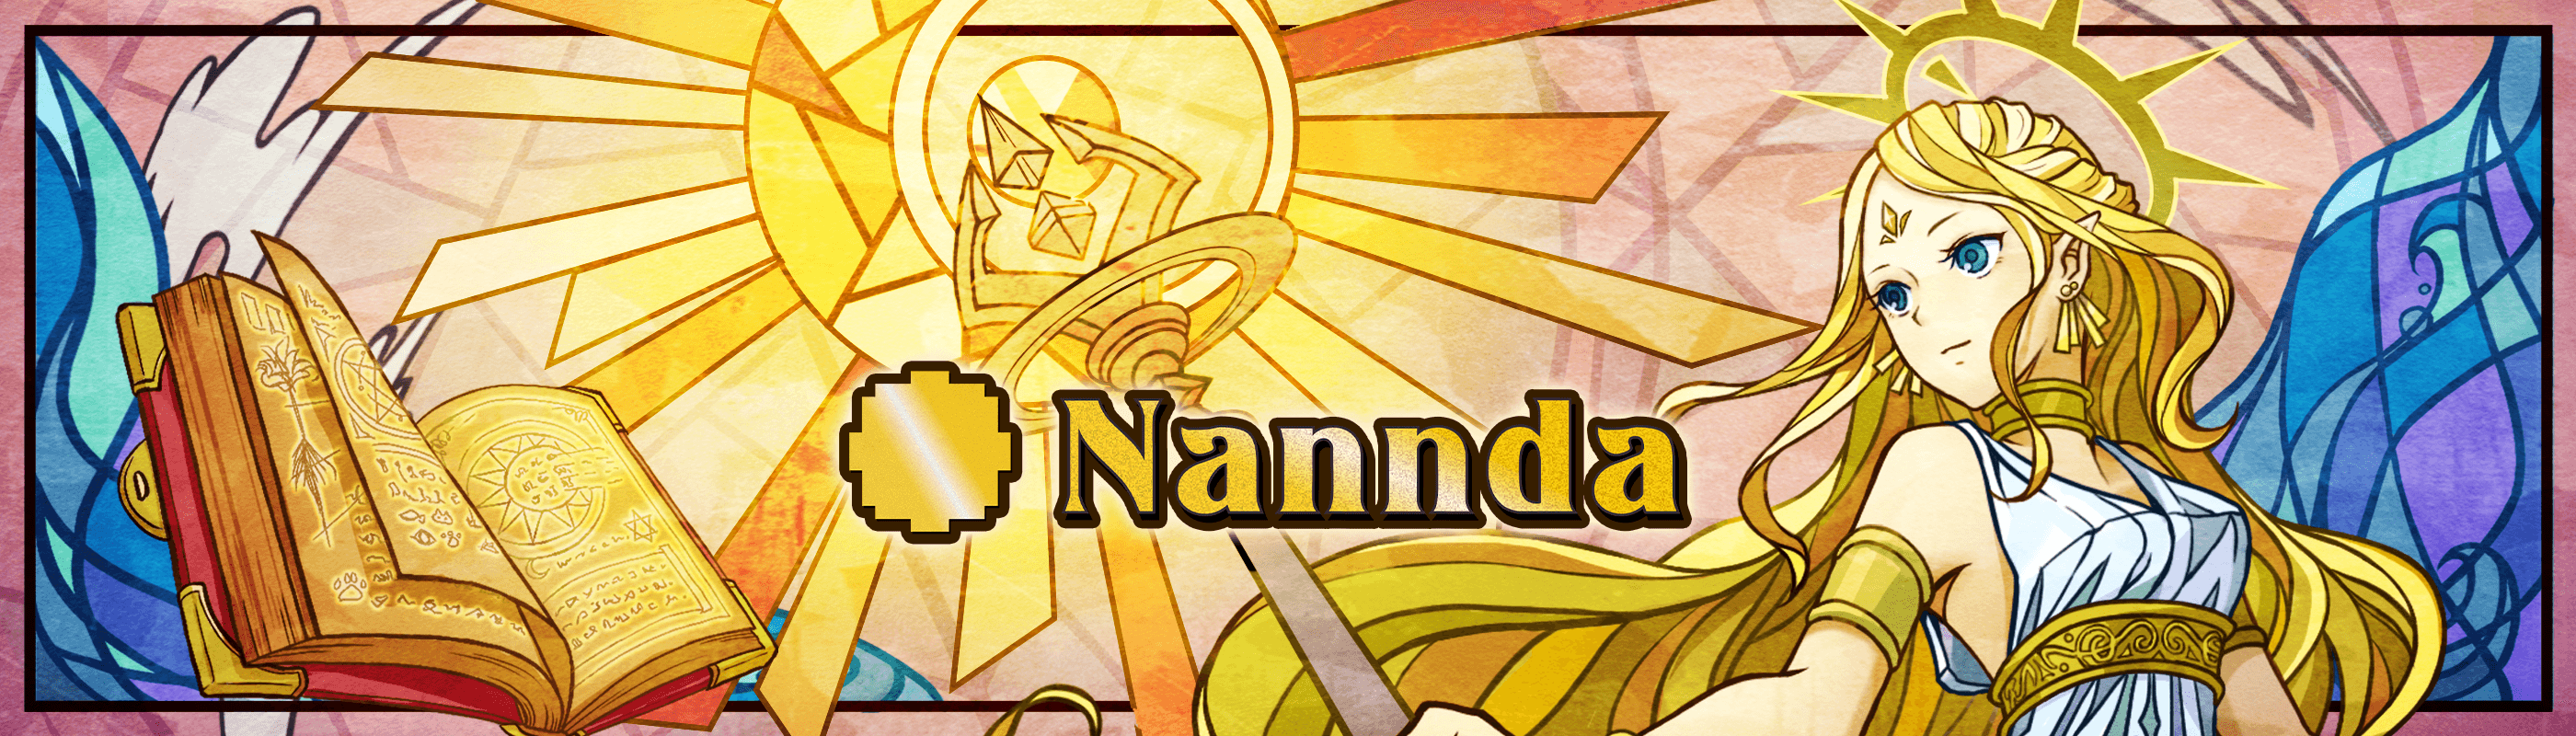 Nannda Spellbook of Genesis